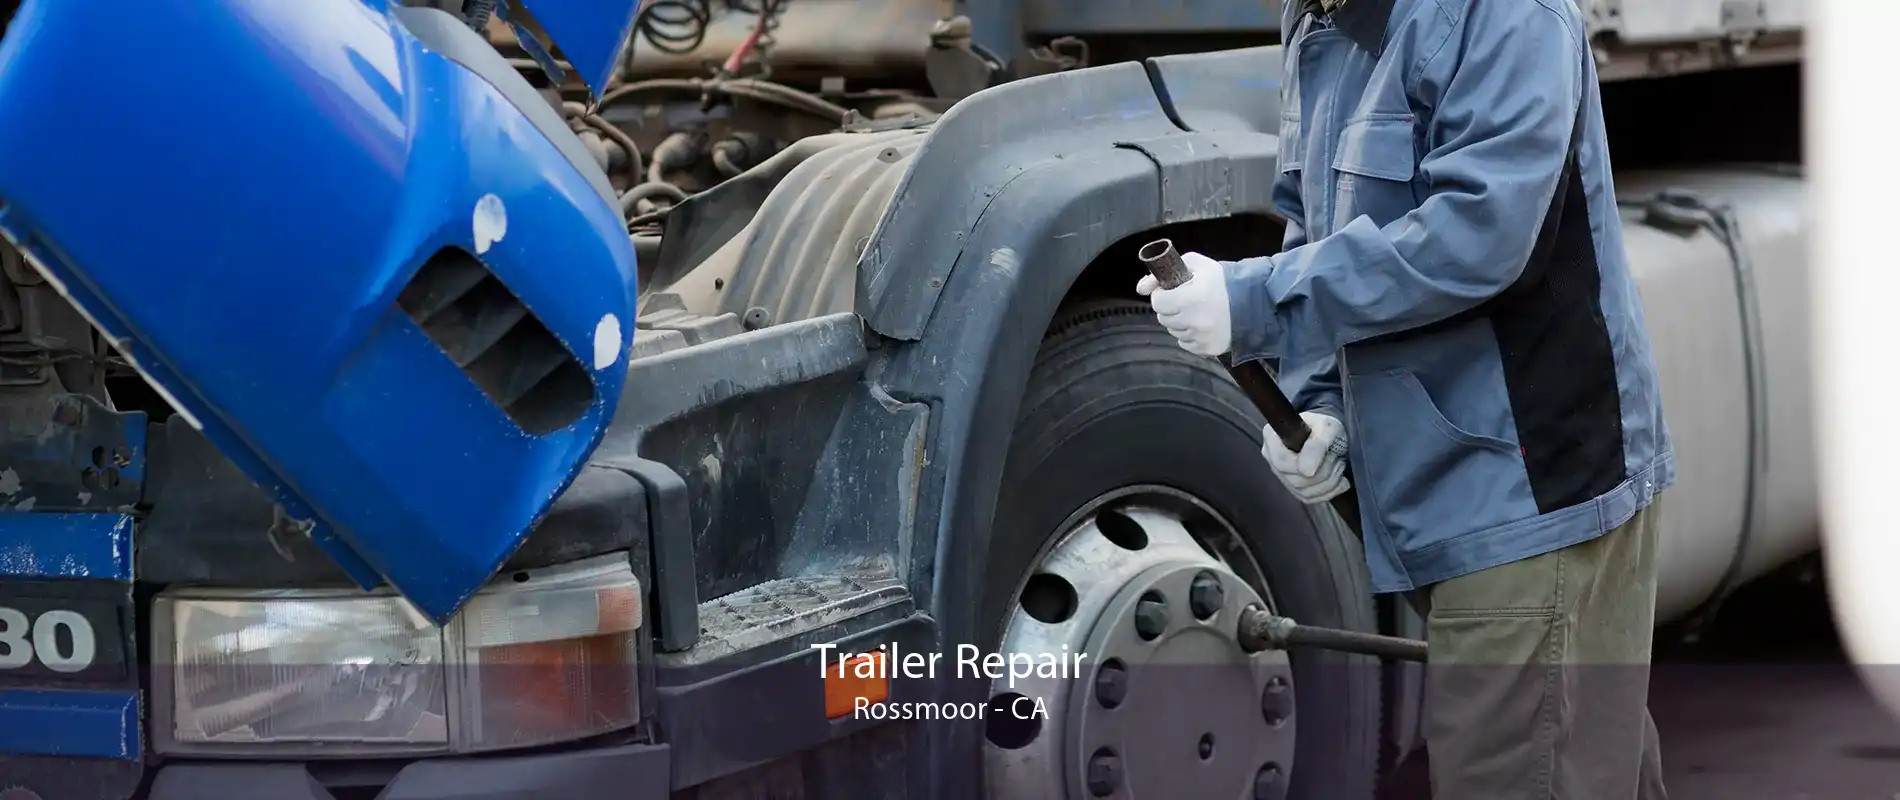 Trailer Repair Rossmoor - CA